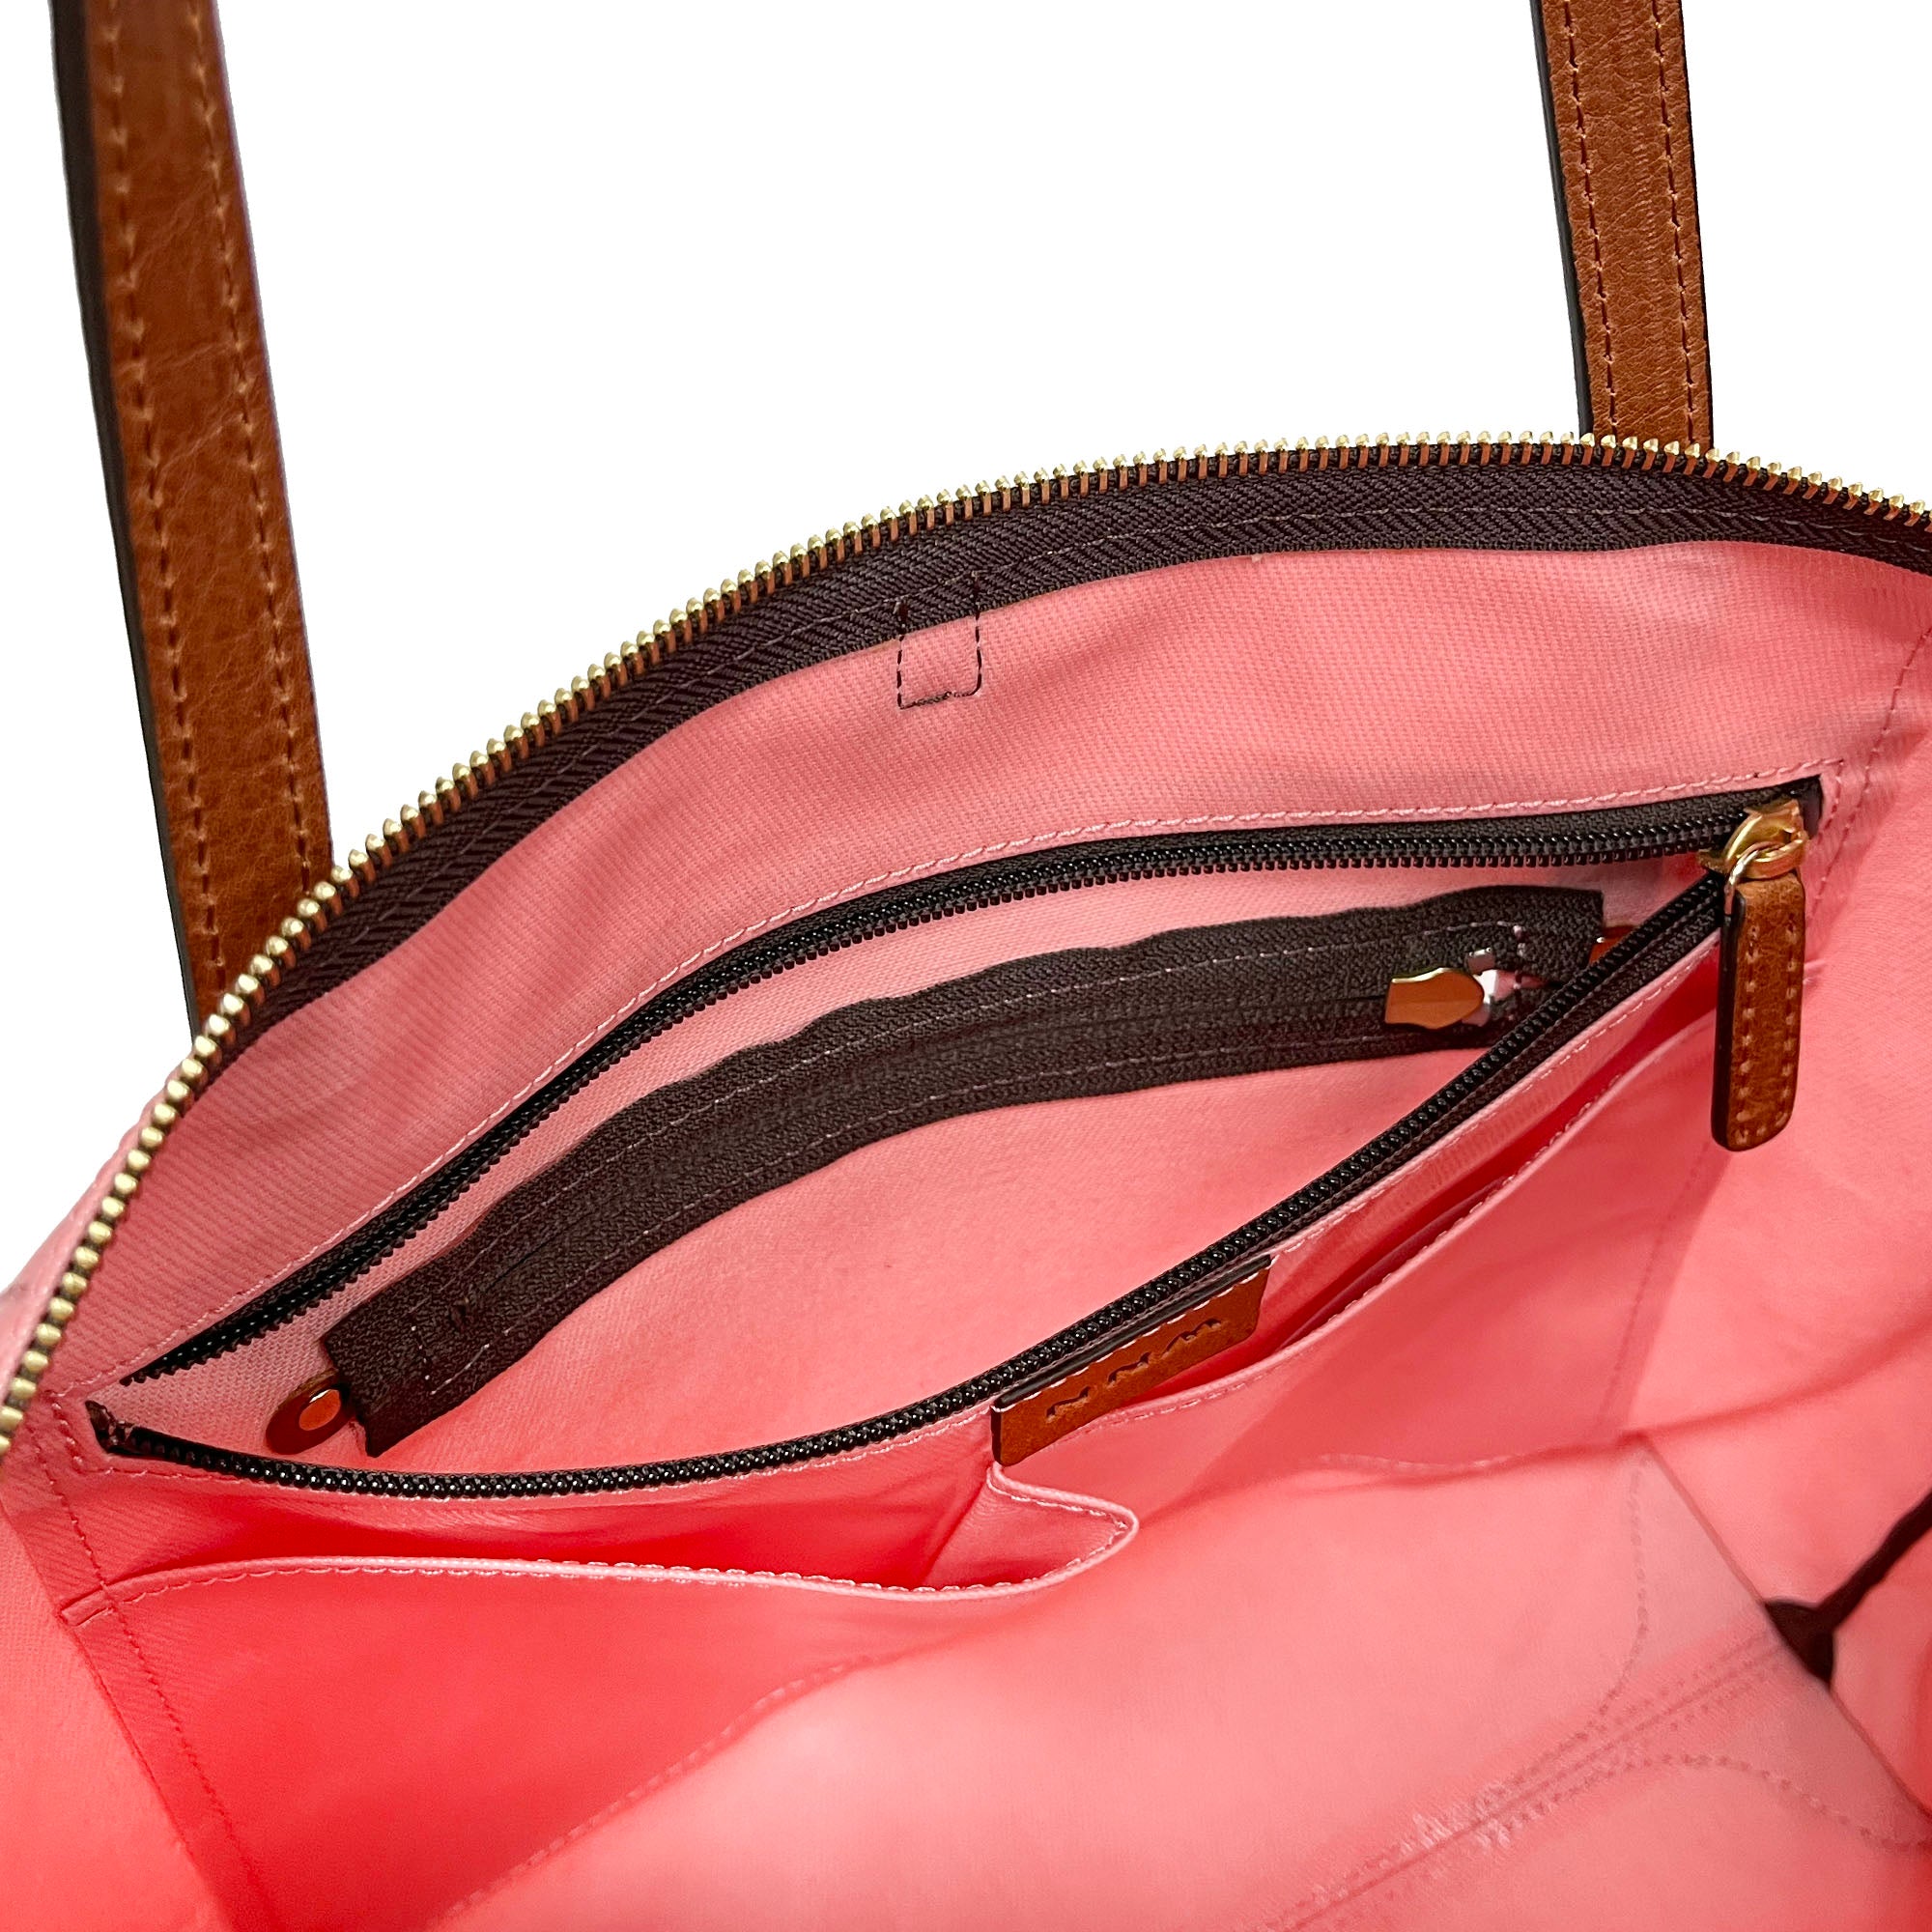 LIFE |  Waterproof Tote Bag (Coral Pink)